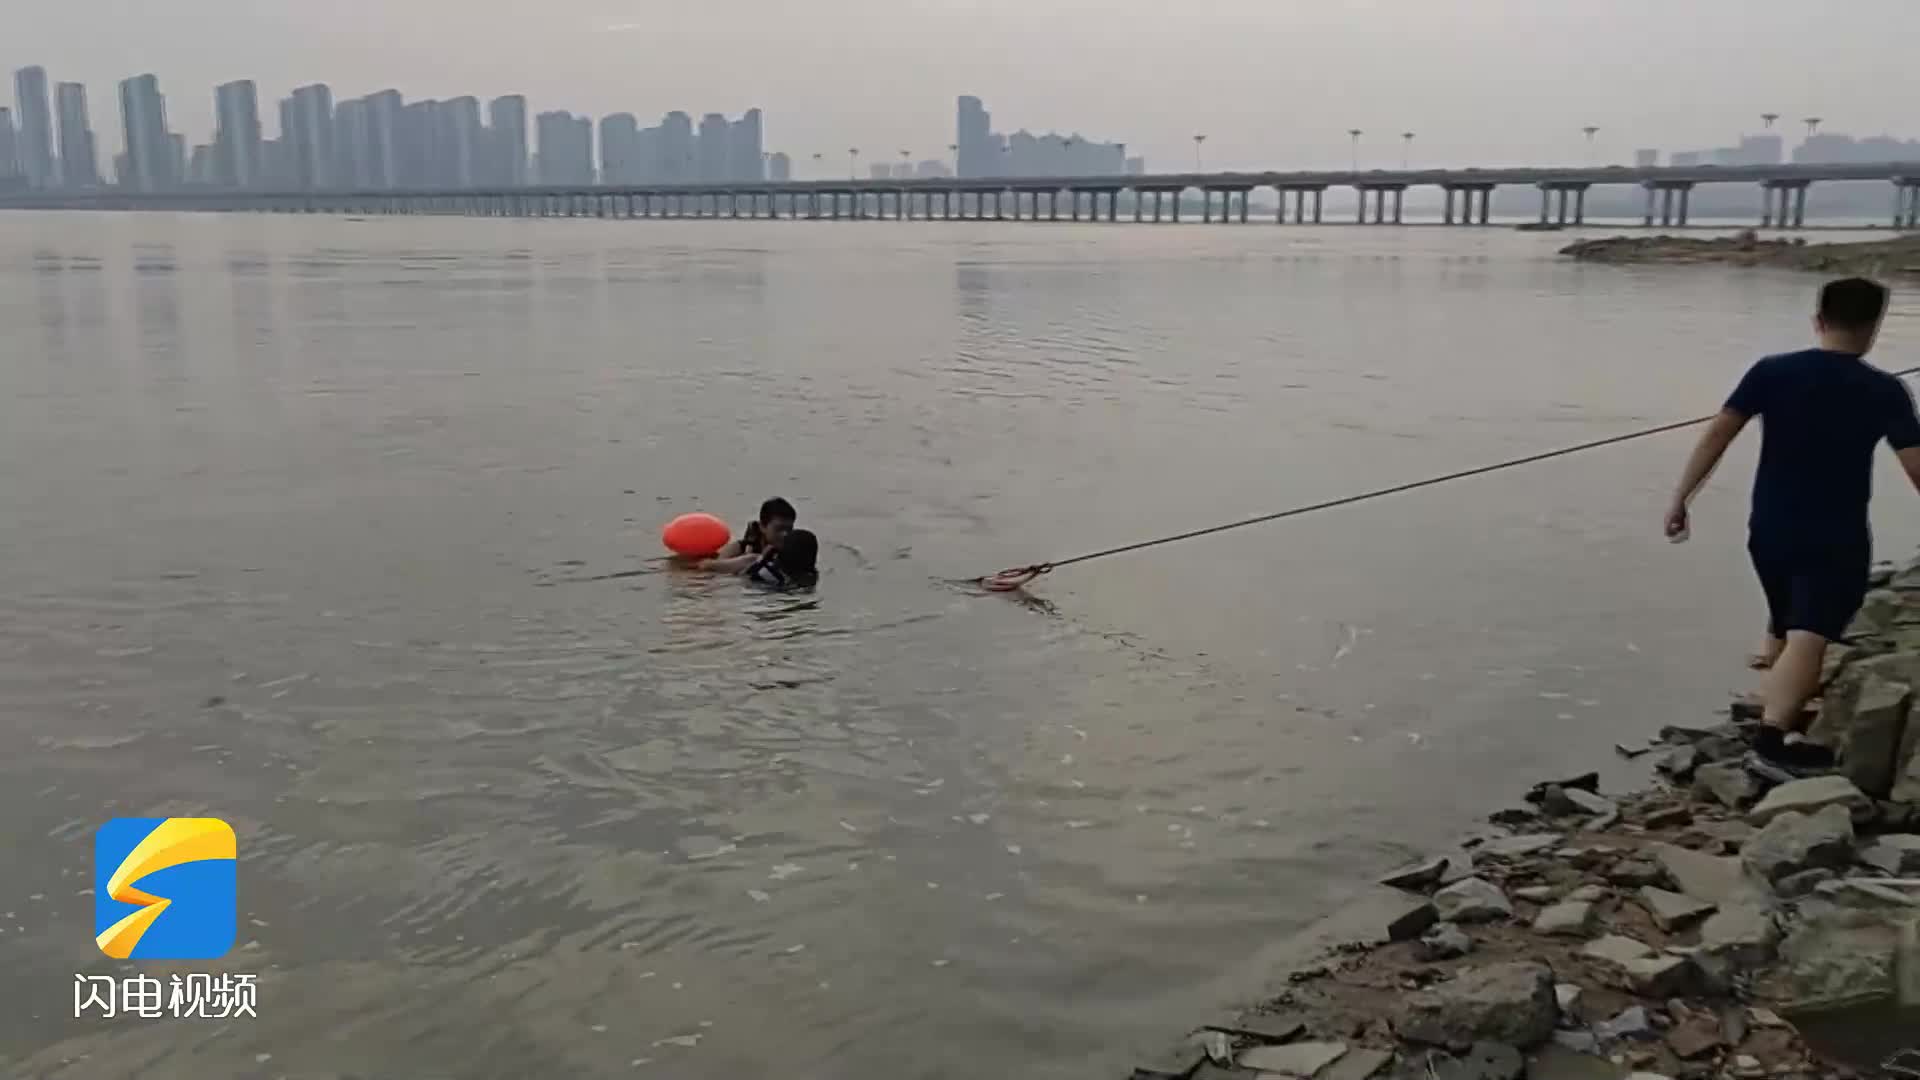 游泳体力不支被困河滩 临沂消防到场“巧”施救